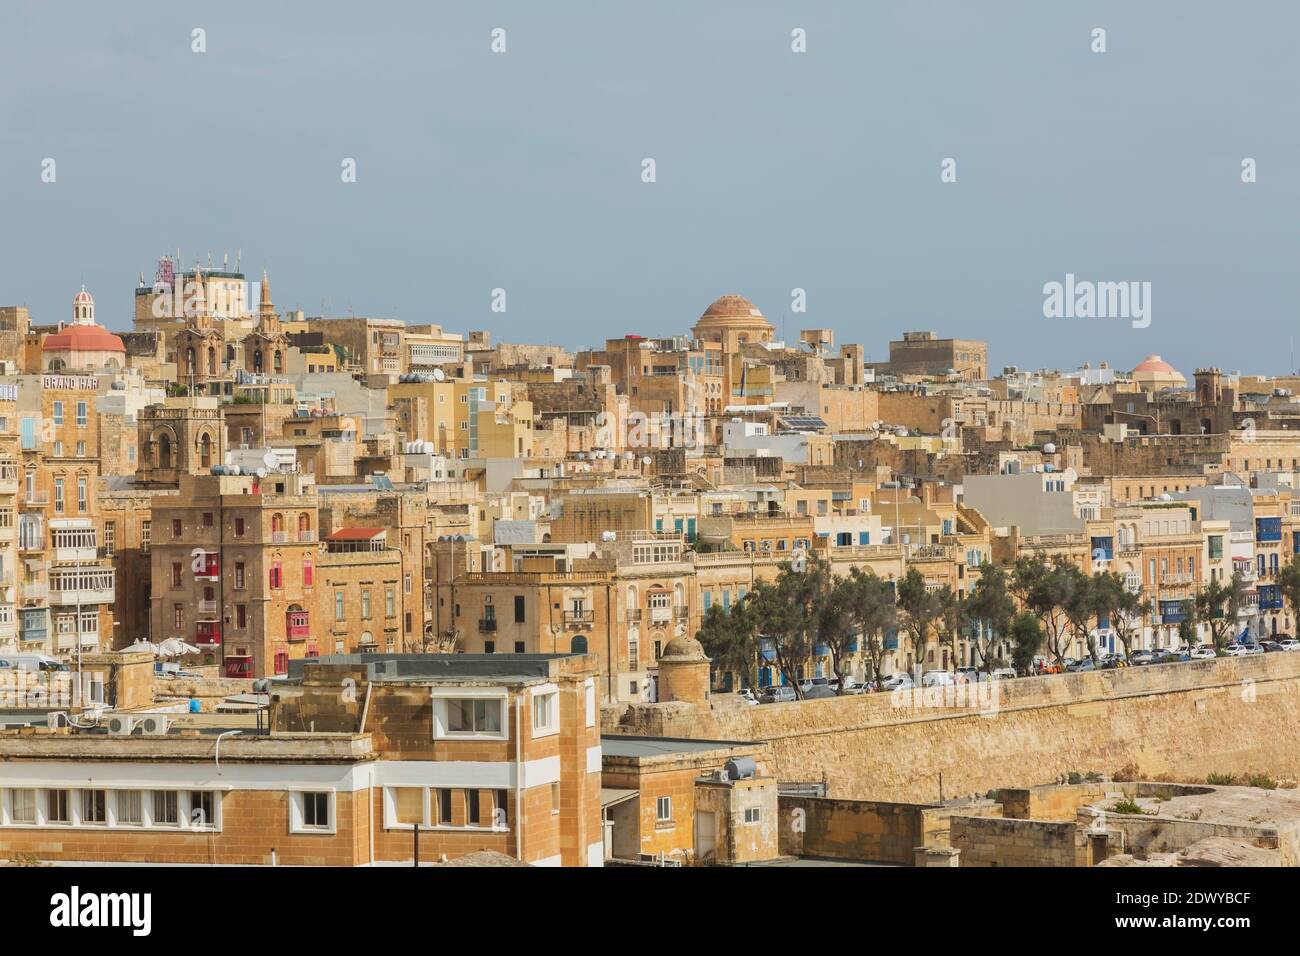 Lo skyline della città di Valletta con antiche mura di fortificazione ed edifici architettonici con balconi maltesi, Malta Foto Stock